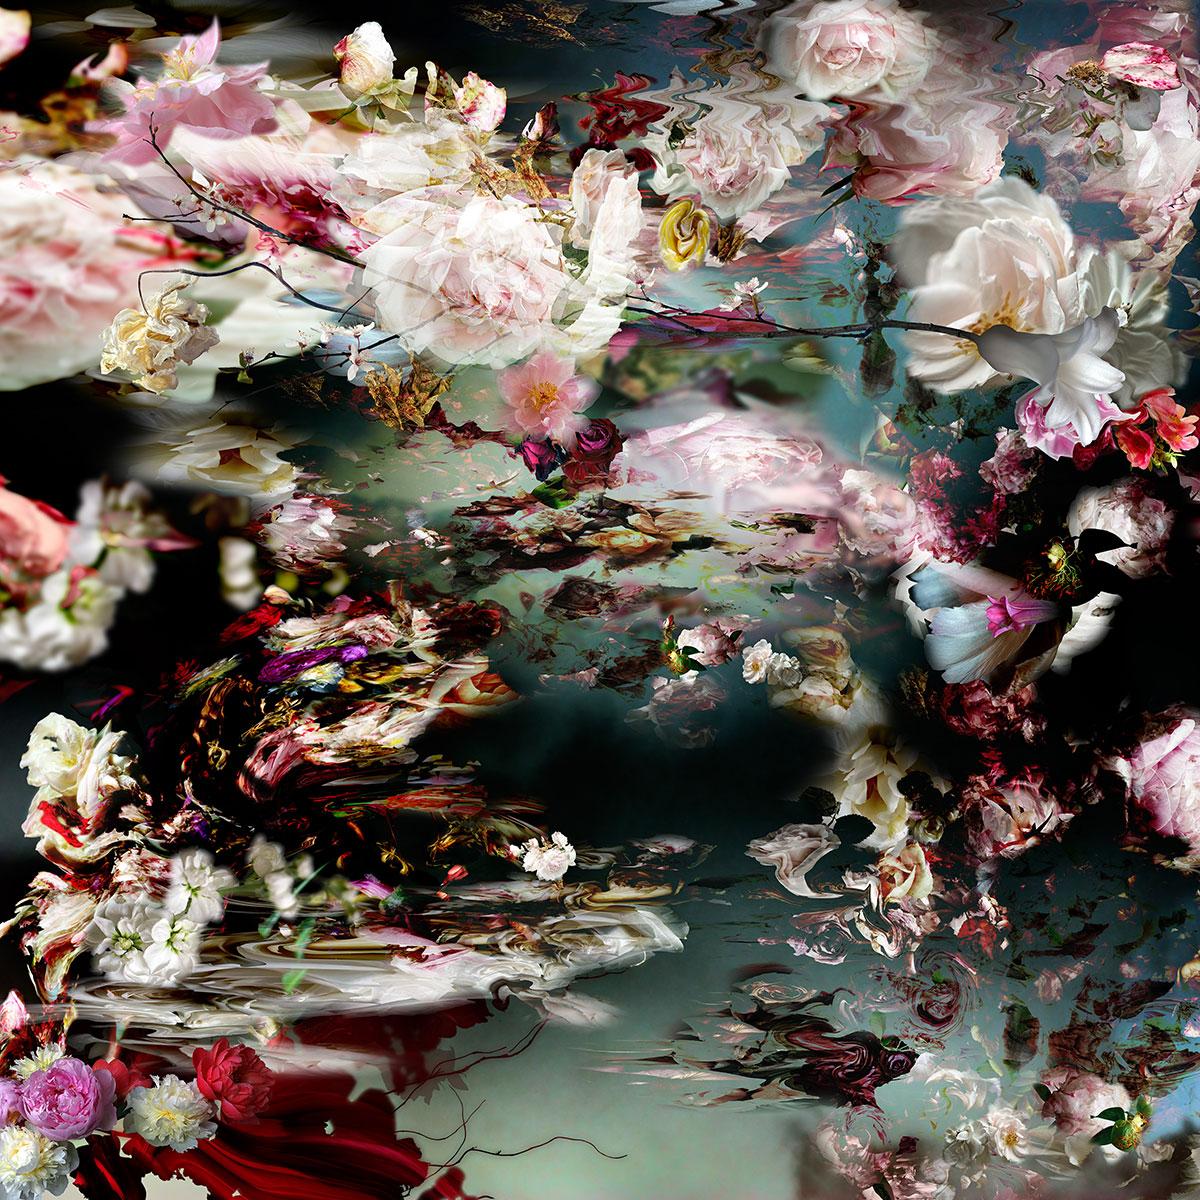 Isabelle Menin Still-Life Photograph – Quadratische Fotografie: Fluss 5, Blumenstillleben, farbenfrohes rosa, rot, weiß, blau und blau